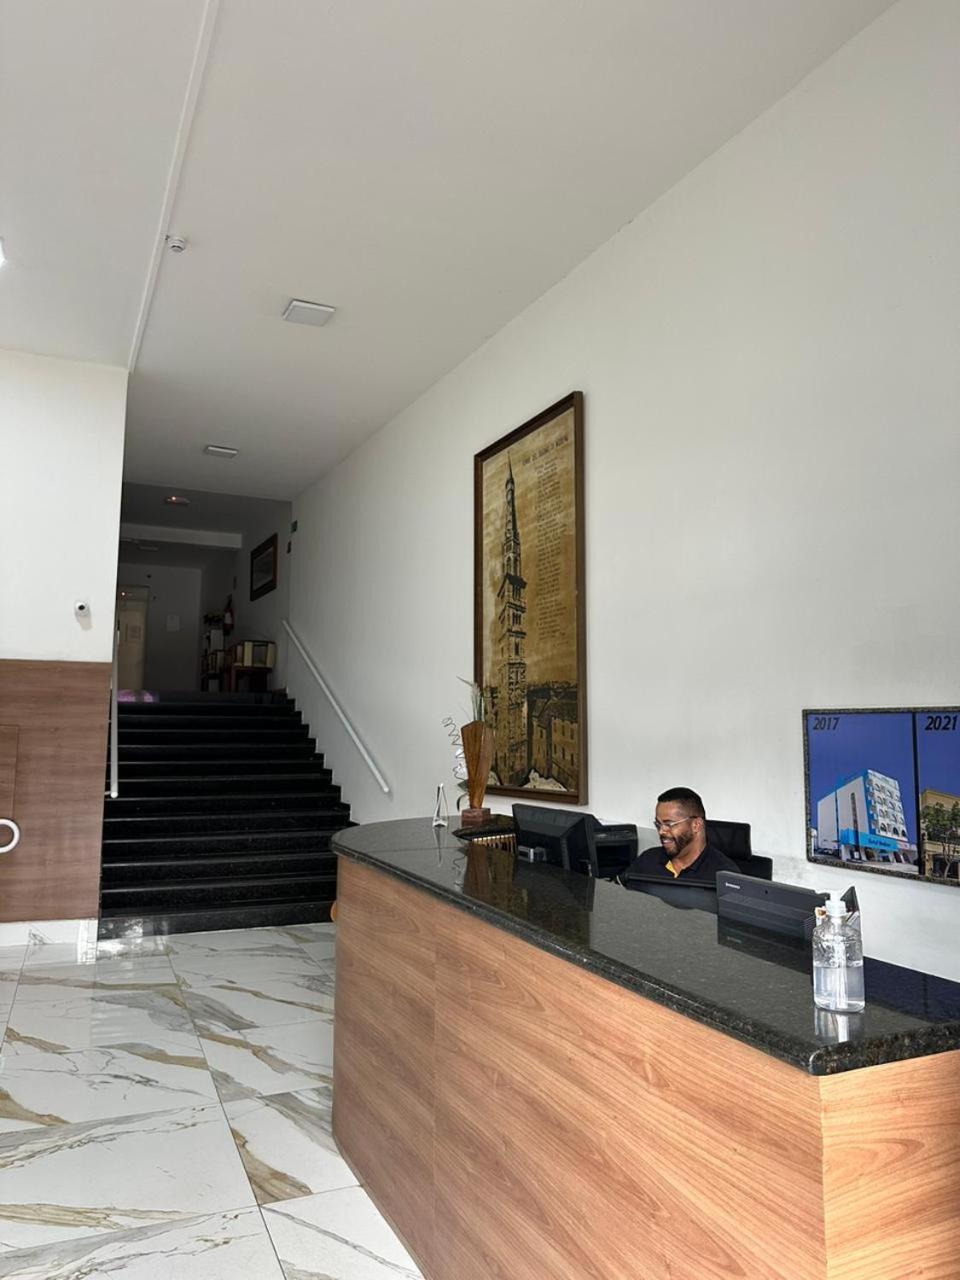 Hotel Modena - São José dos Campos Exterior foto